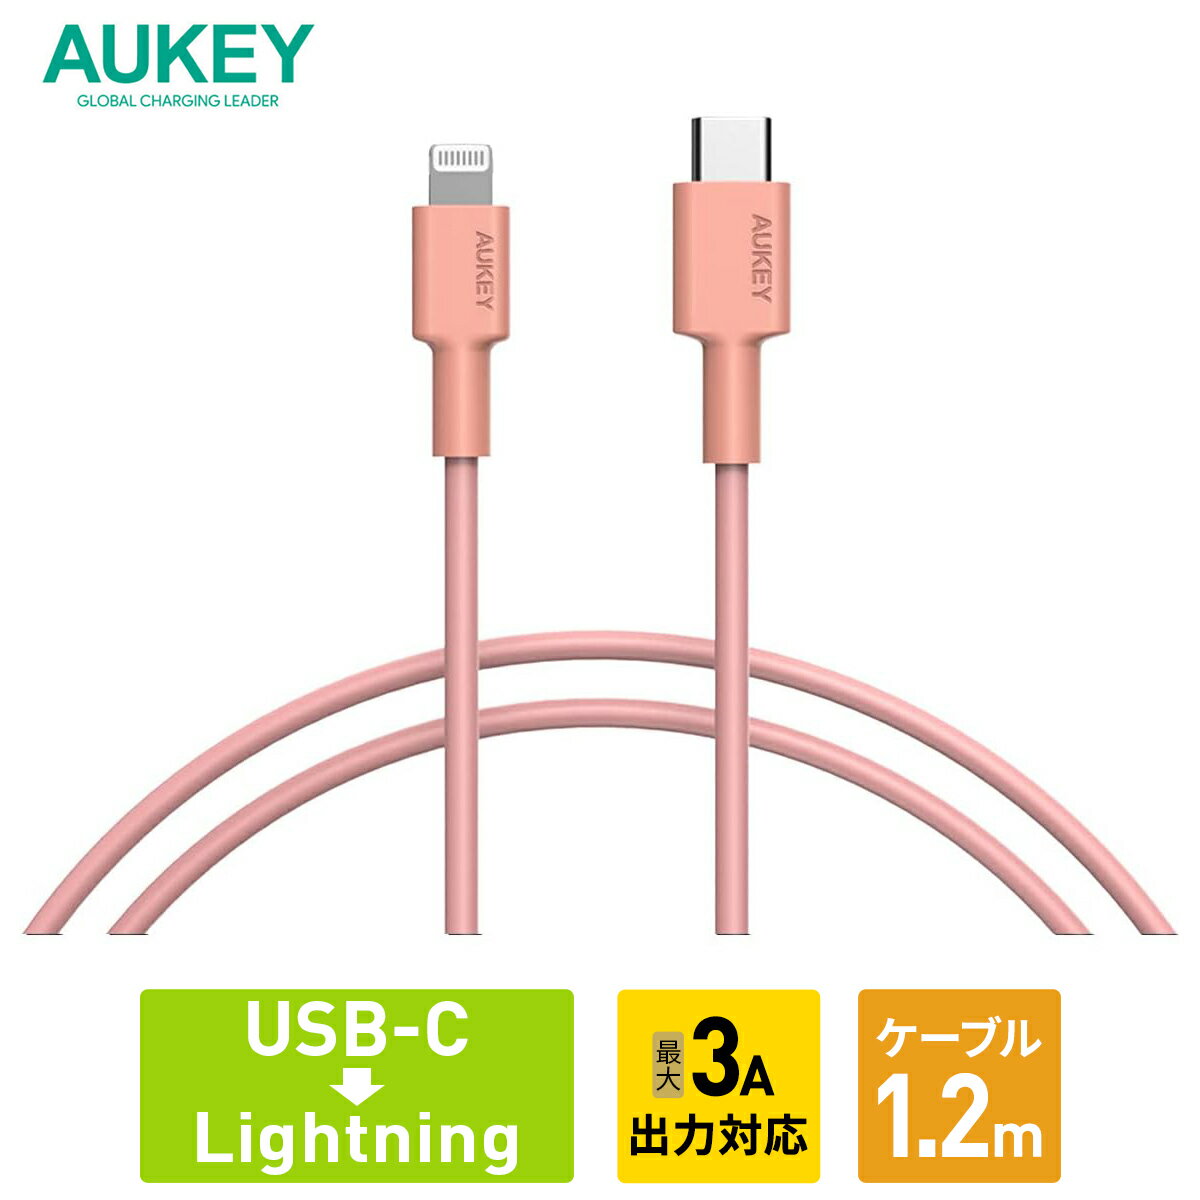 AUKEY USB ケーブル typeC to lightning 480Mbps CB-CL13 パープル ピンク 1.2m 充電ケーブル データ転送 USB-C タイプC ライトニング PD対応 急速充電 スマホ iPhone タブレット オーキー